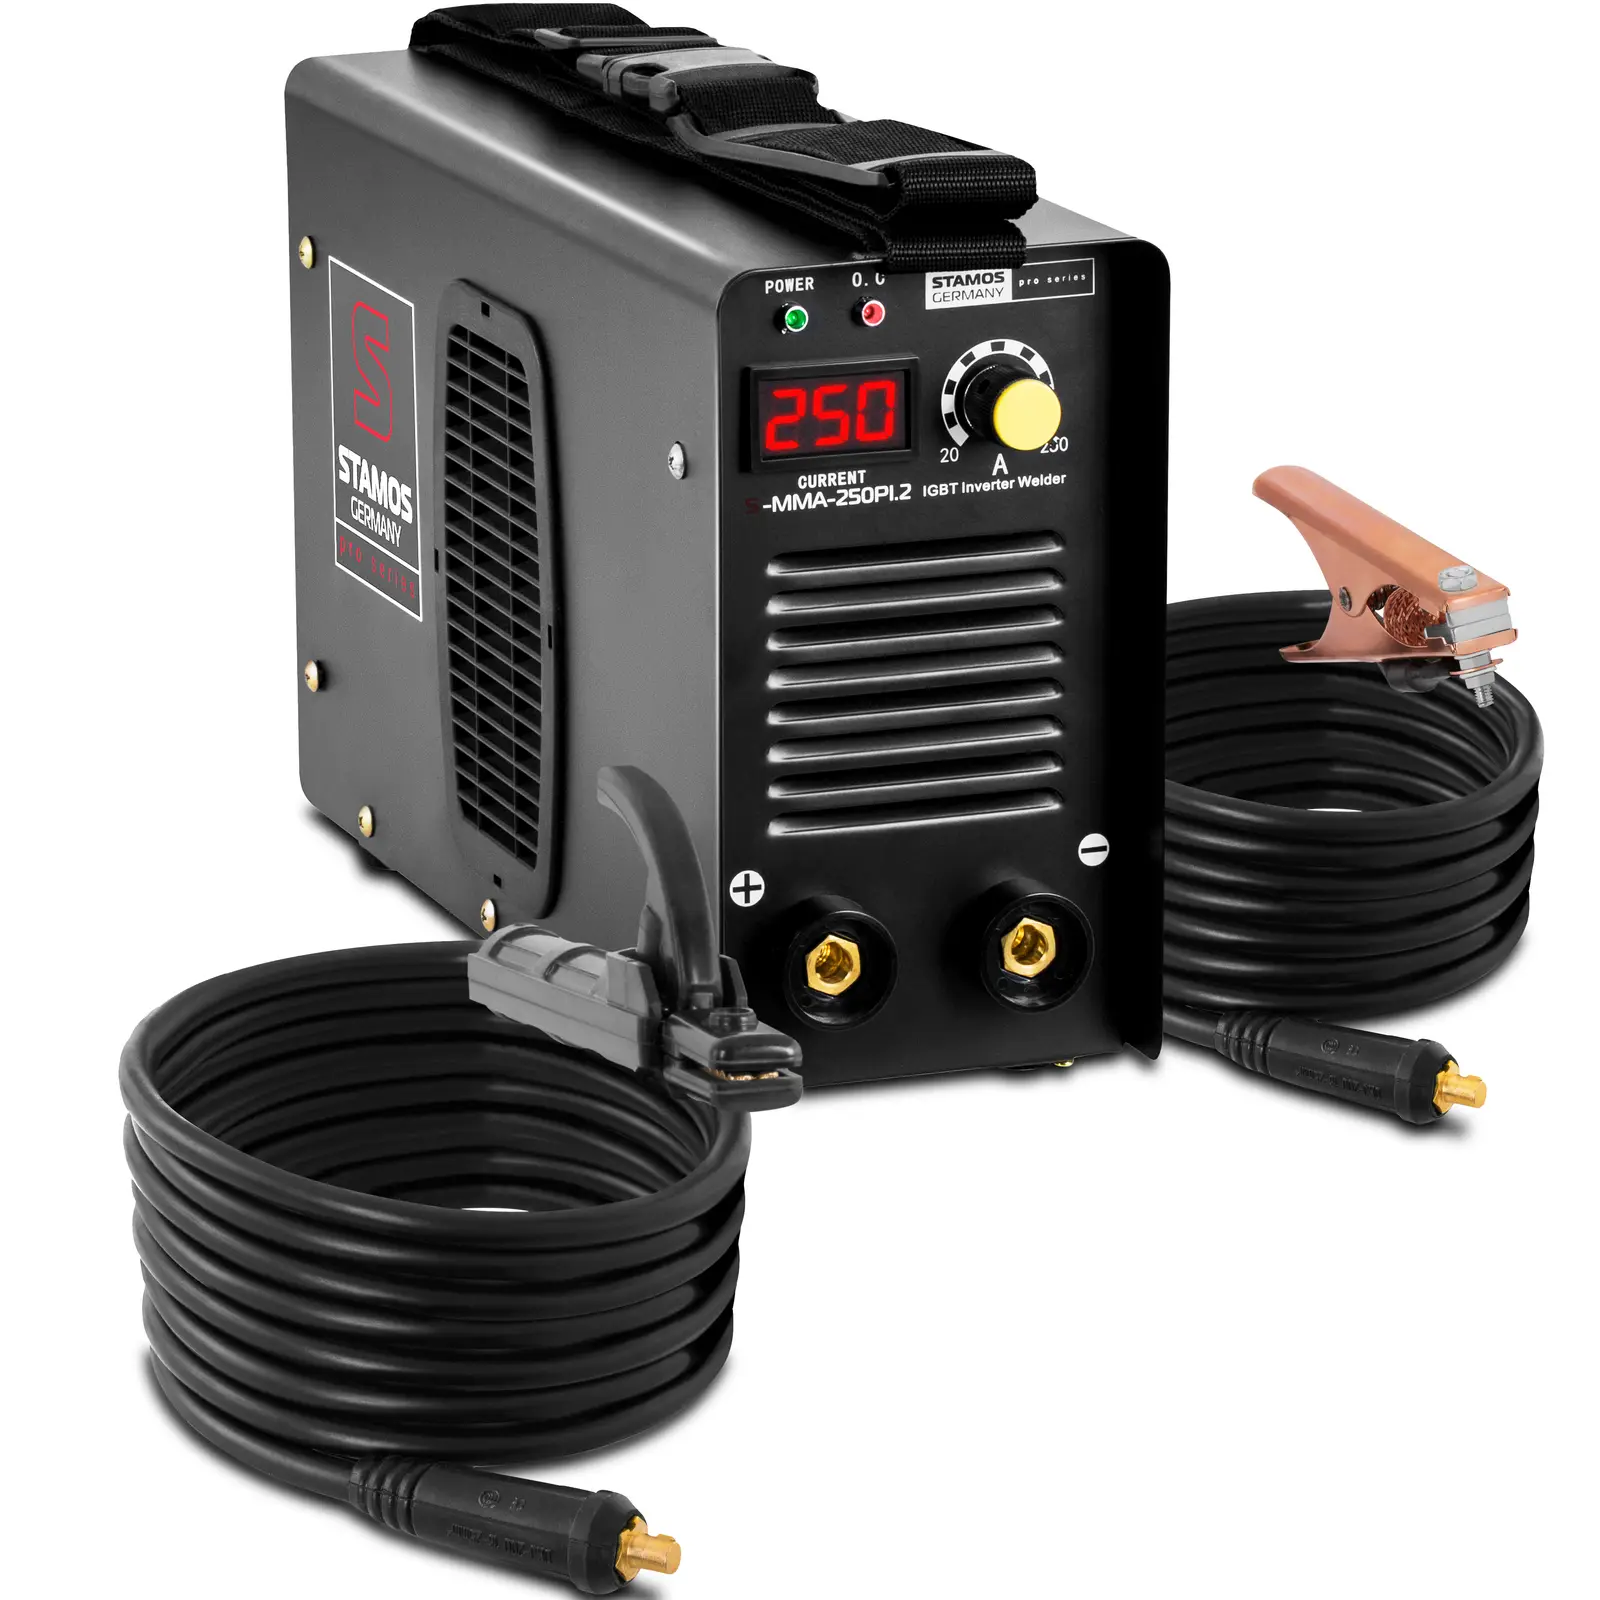 Elektrodová svářečka 250 A 8m kabel Hot Start PRO - Elektrodové svářečky Stamos Pro Series